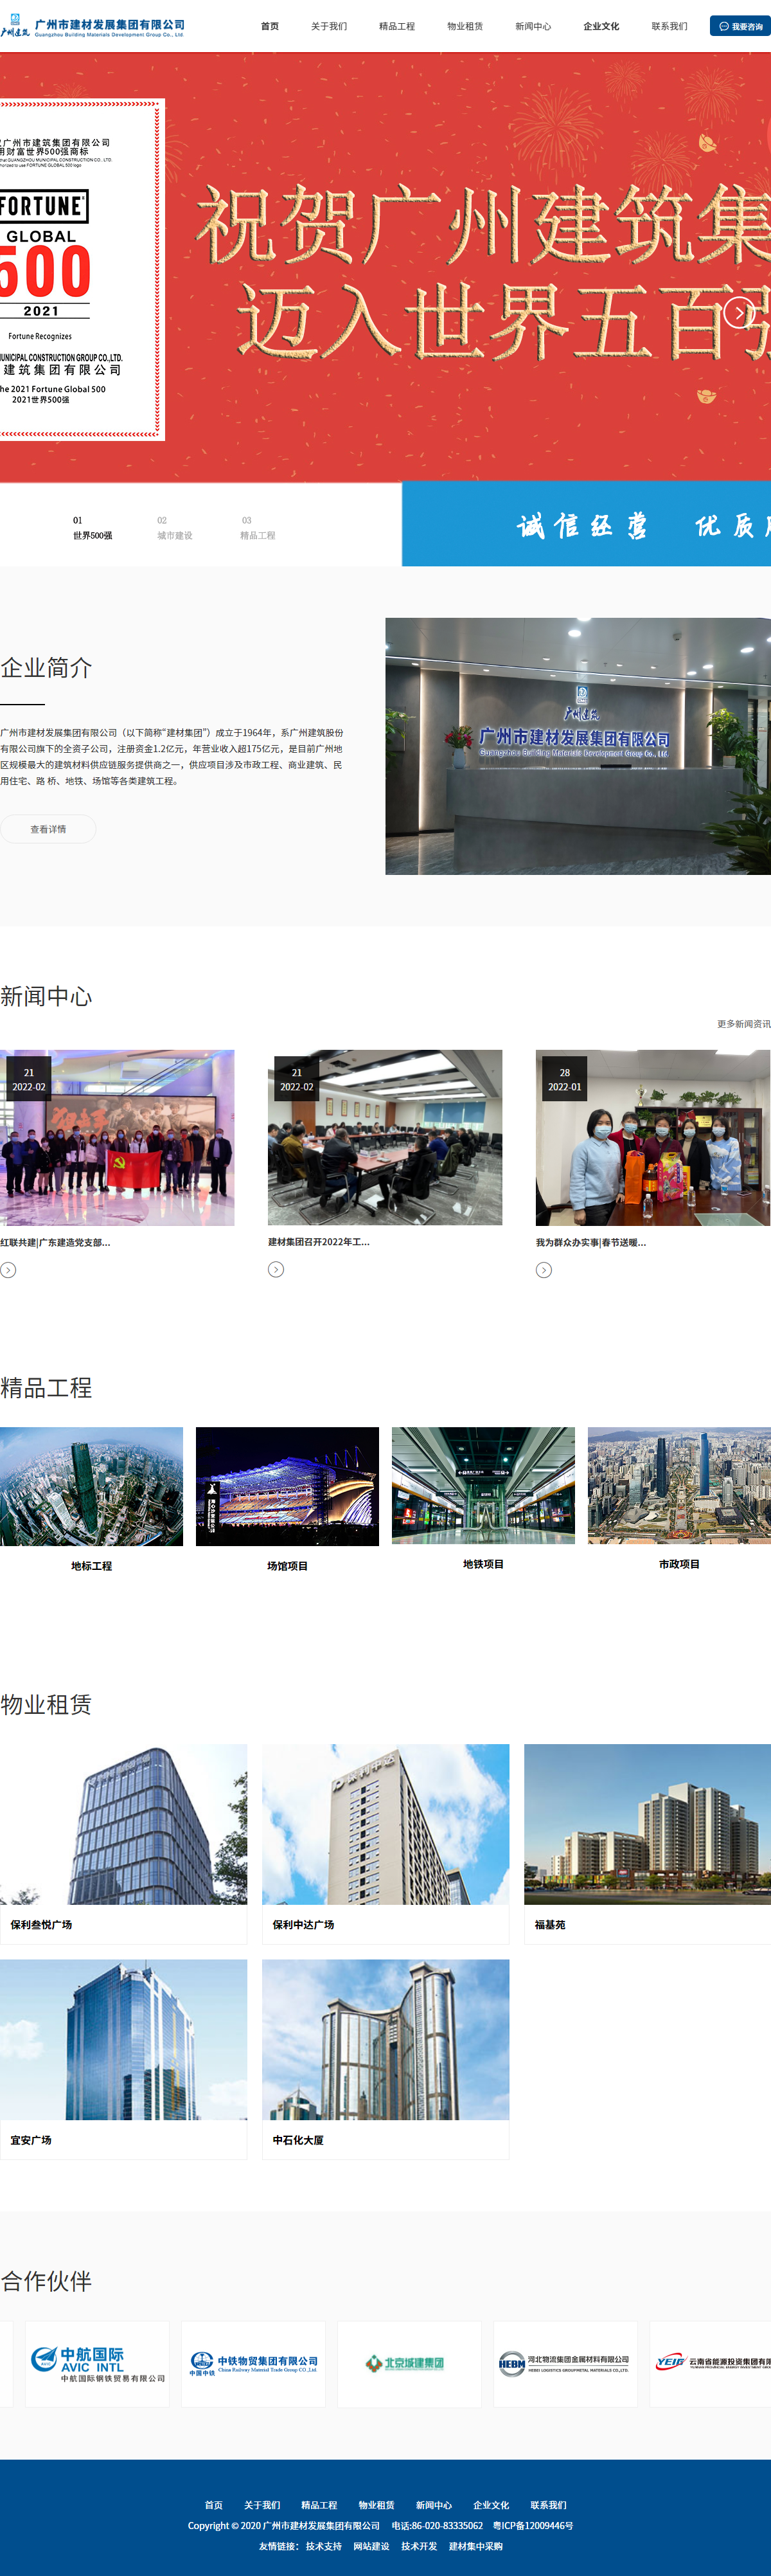 广州市建材发展集团有限公司网站案例